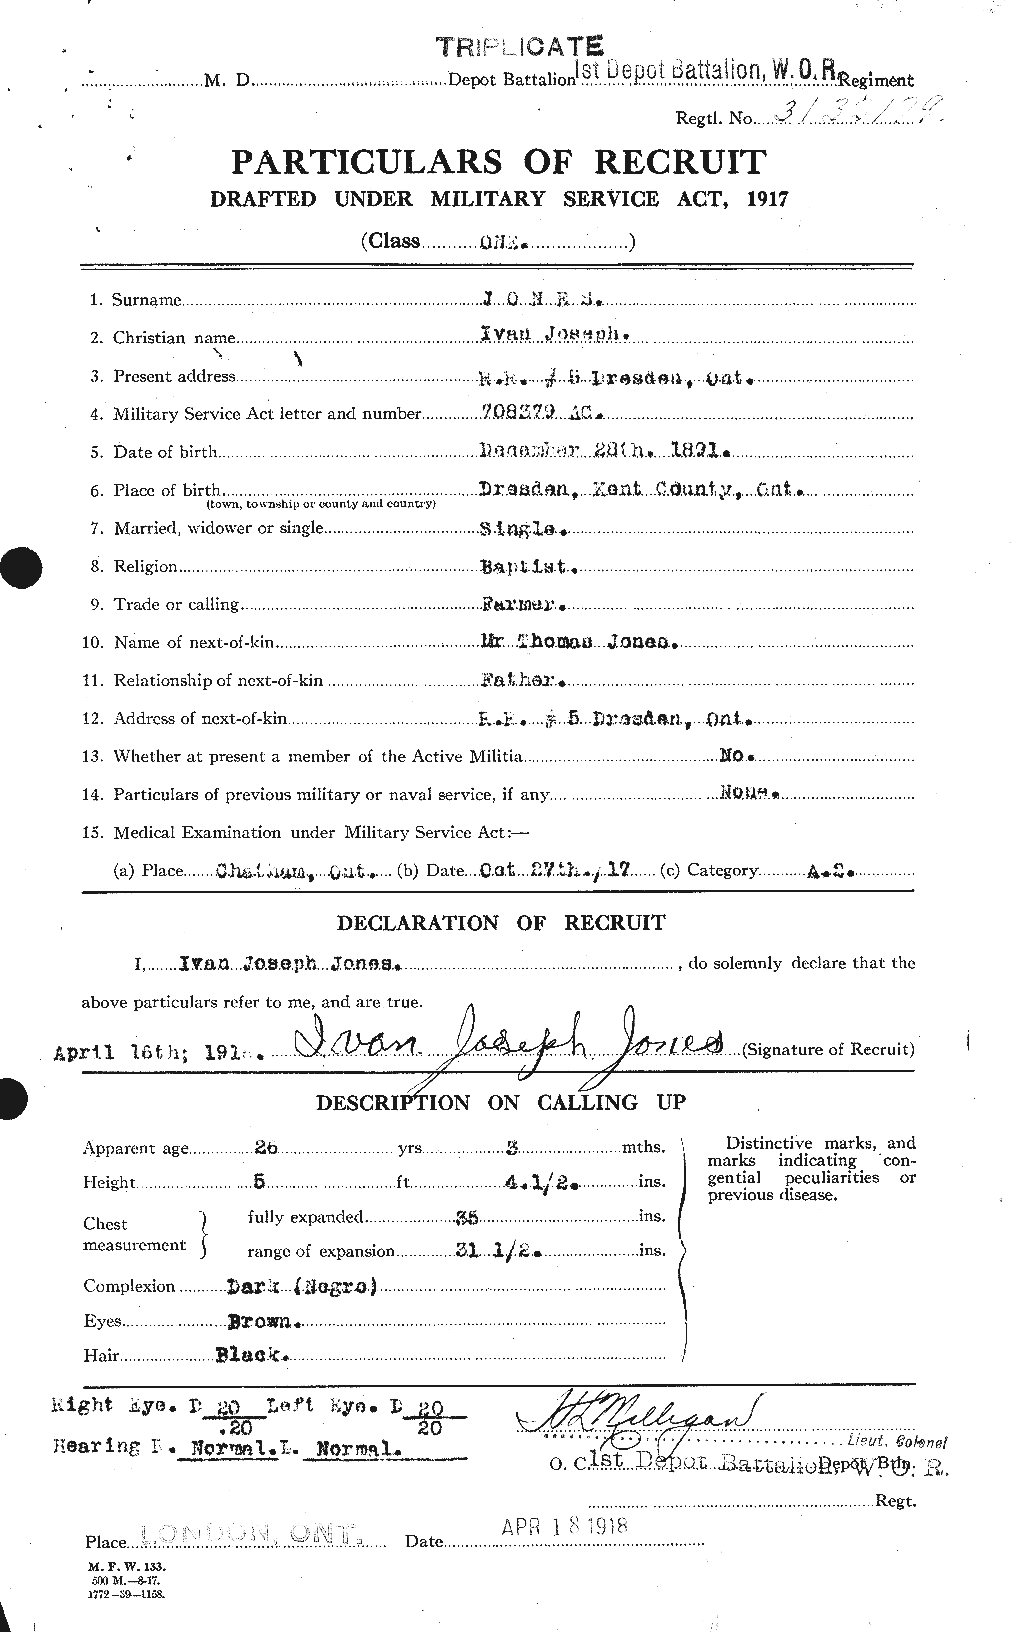 Dossiers du Personnel de la Première Guerre mondiale - CEC 425553a